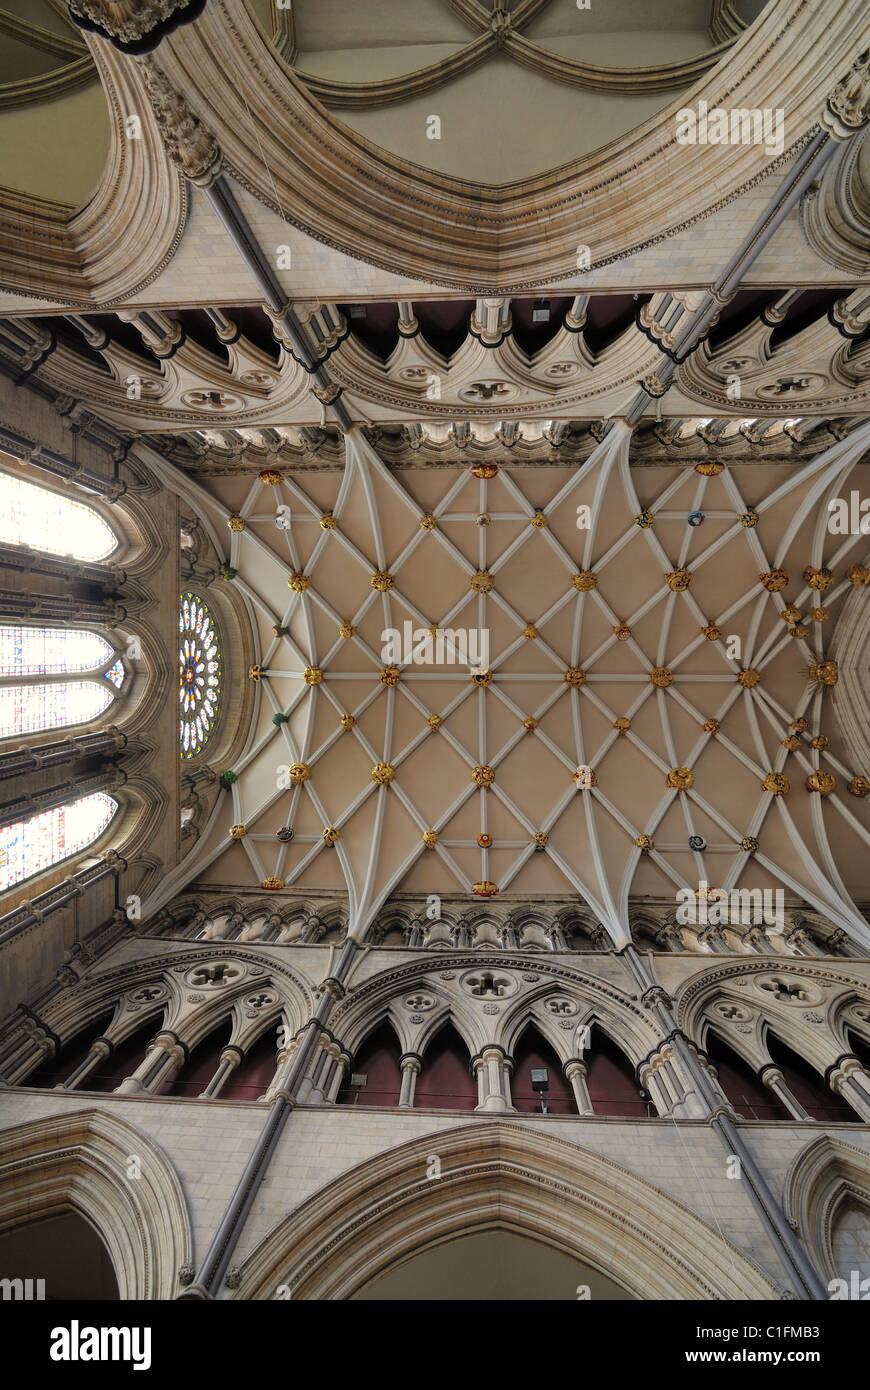 Interno della cattedrale di York Minster, una pietra miliare nella cattedrale di York, Inghilterra. Foto Stock